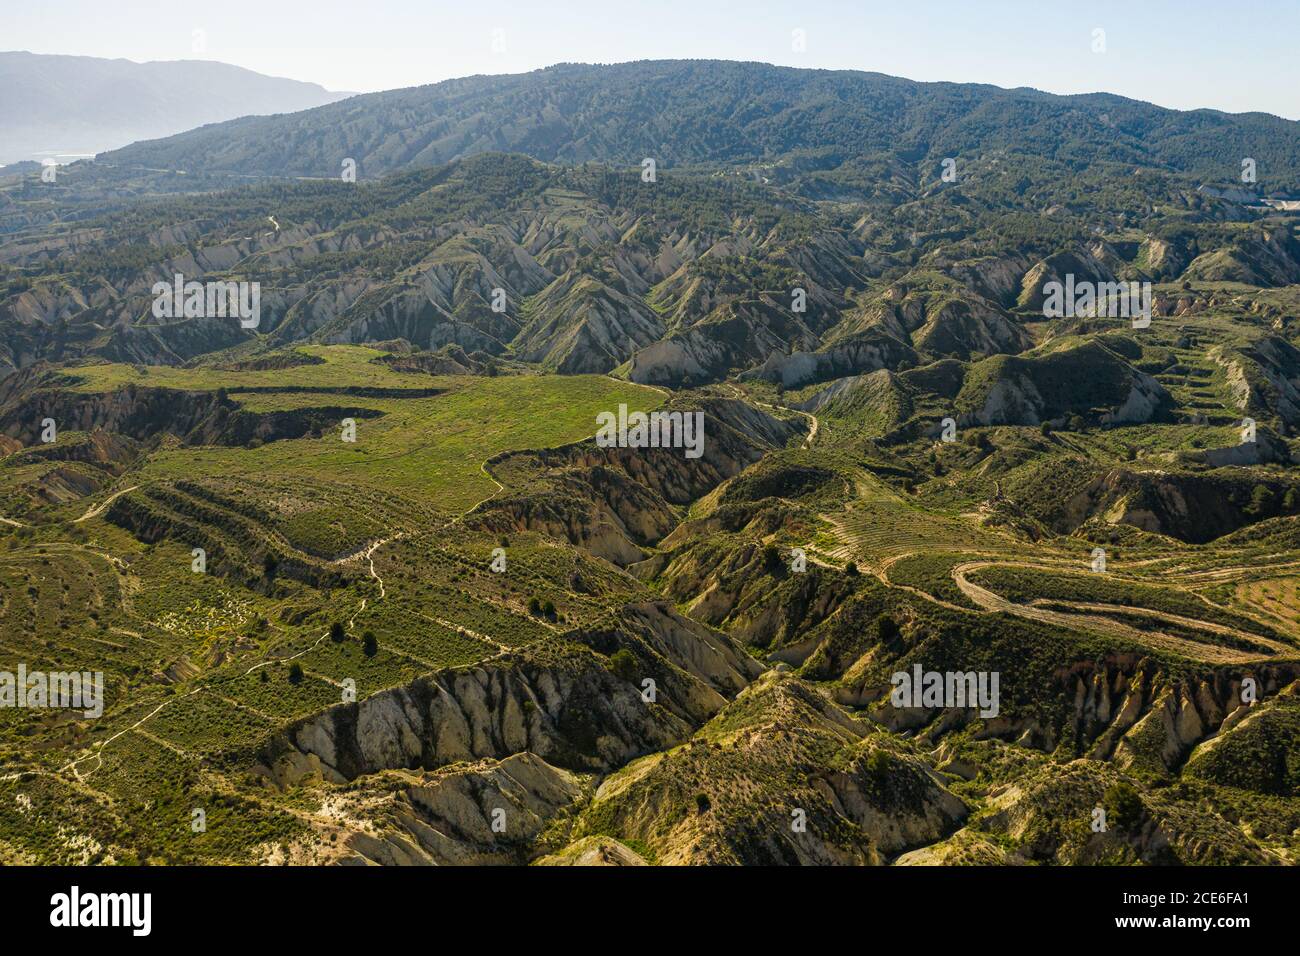 Otherworldly landscape in Barrancos de Gebas, near Murcia, Spain Stock Photo